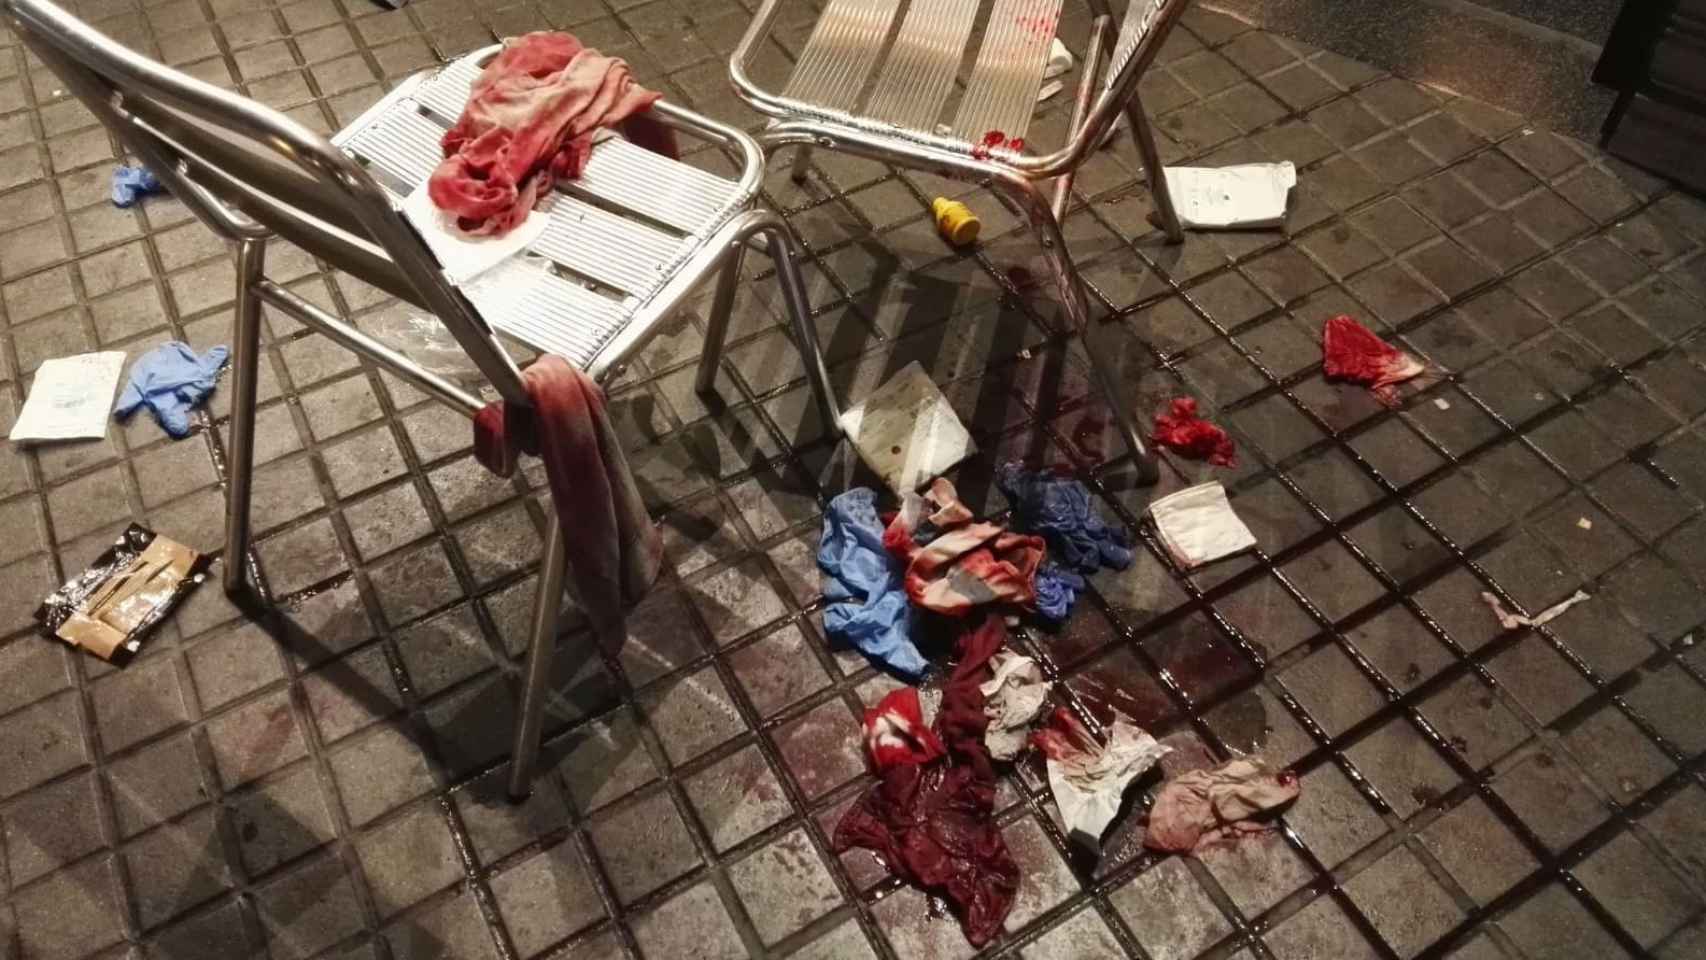 Restos de sangre del turista herido junto a dos sillas del bar Zúrich.